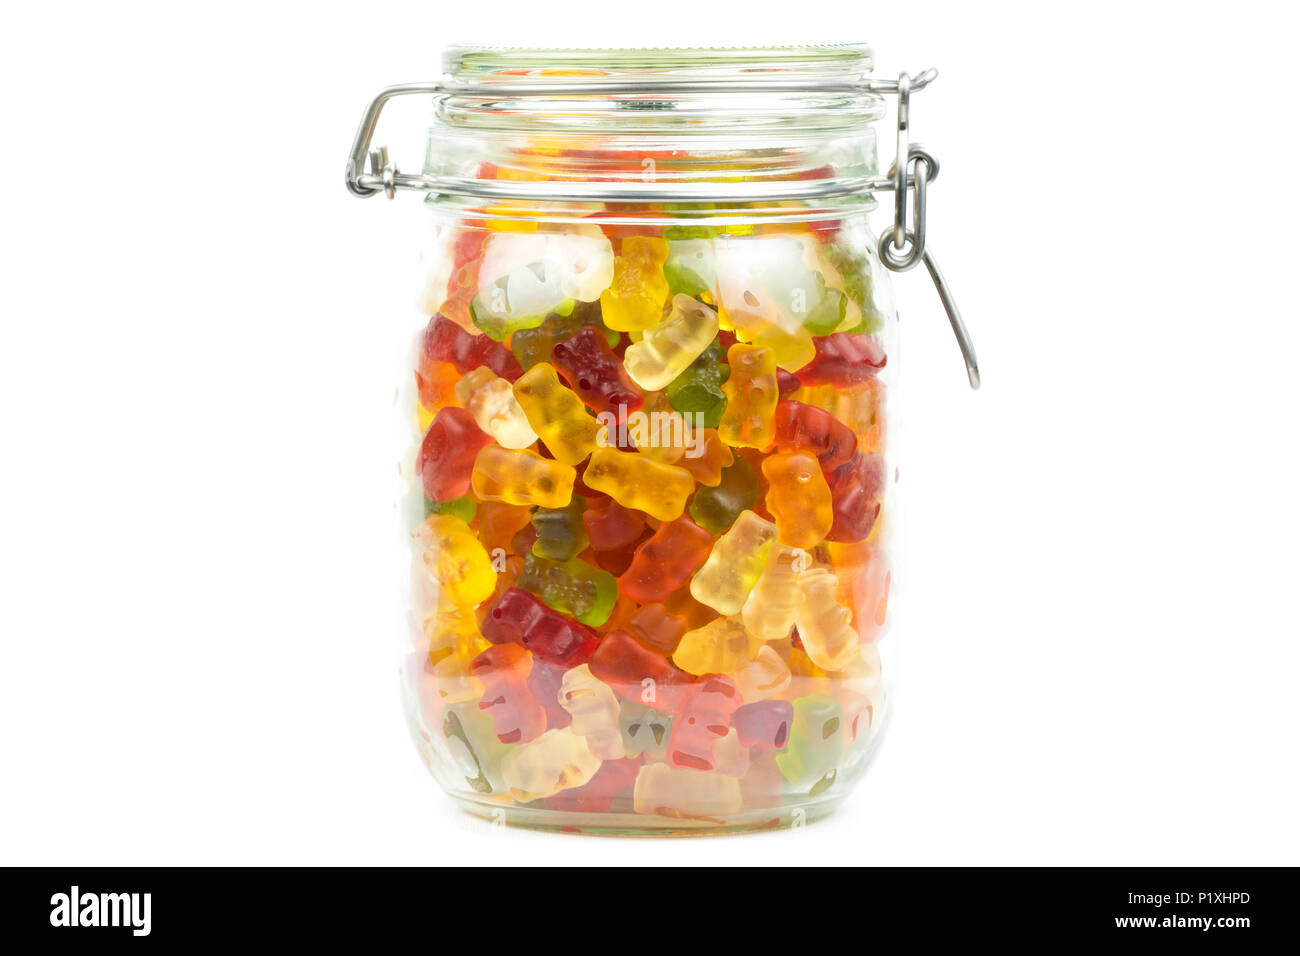 Bunte Gummibärchen/Jelly baby Süßigkeiten Bonbons im Glas auf weißem  Hintergrund Stockfotografie - Alamy